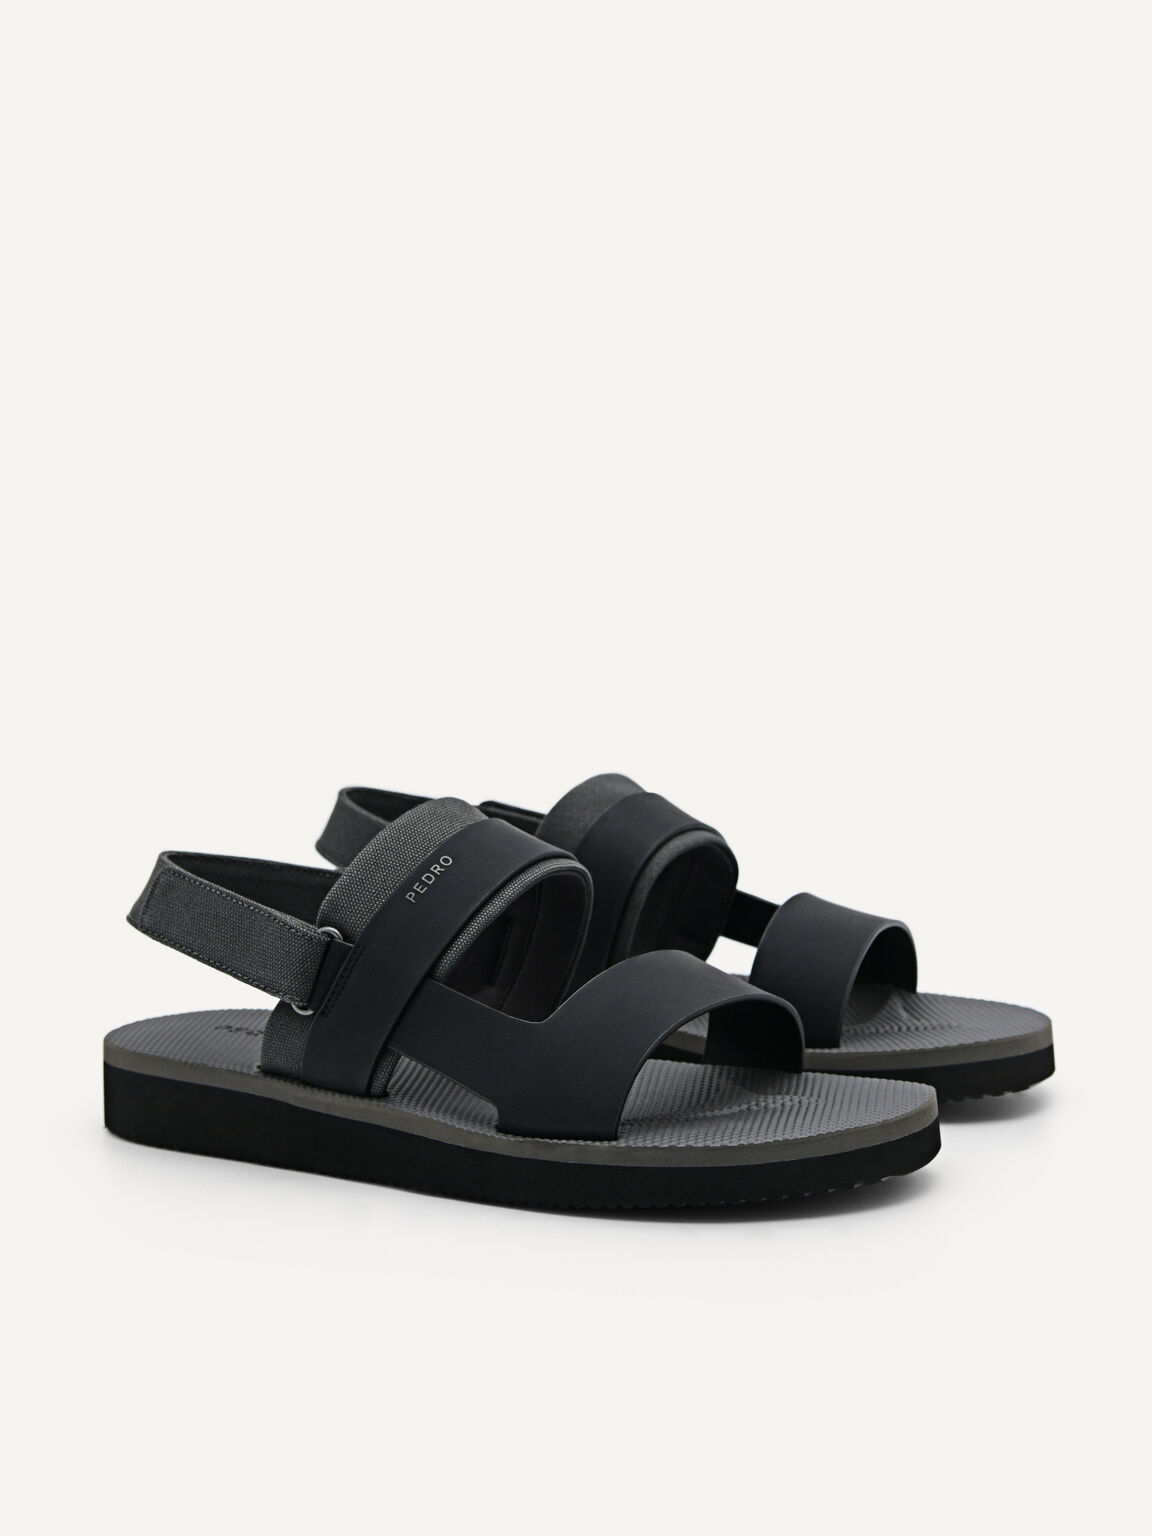 Backstrap Sandals, Black, hi-res